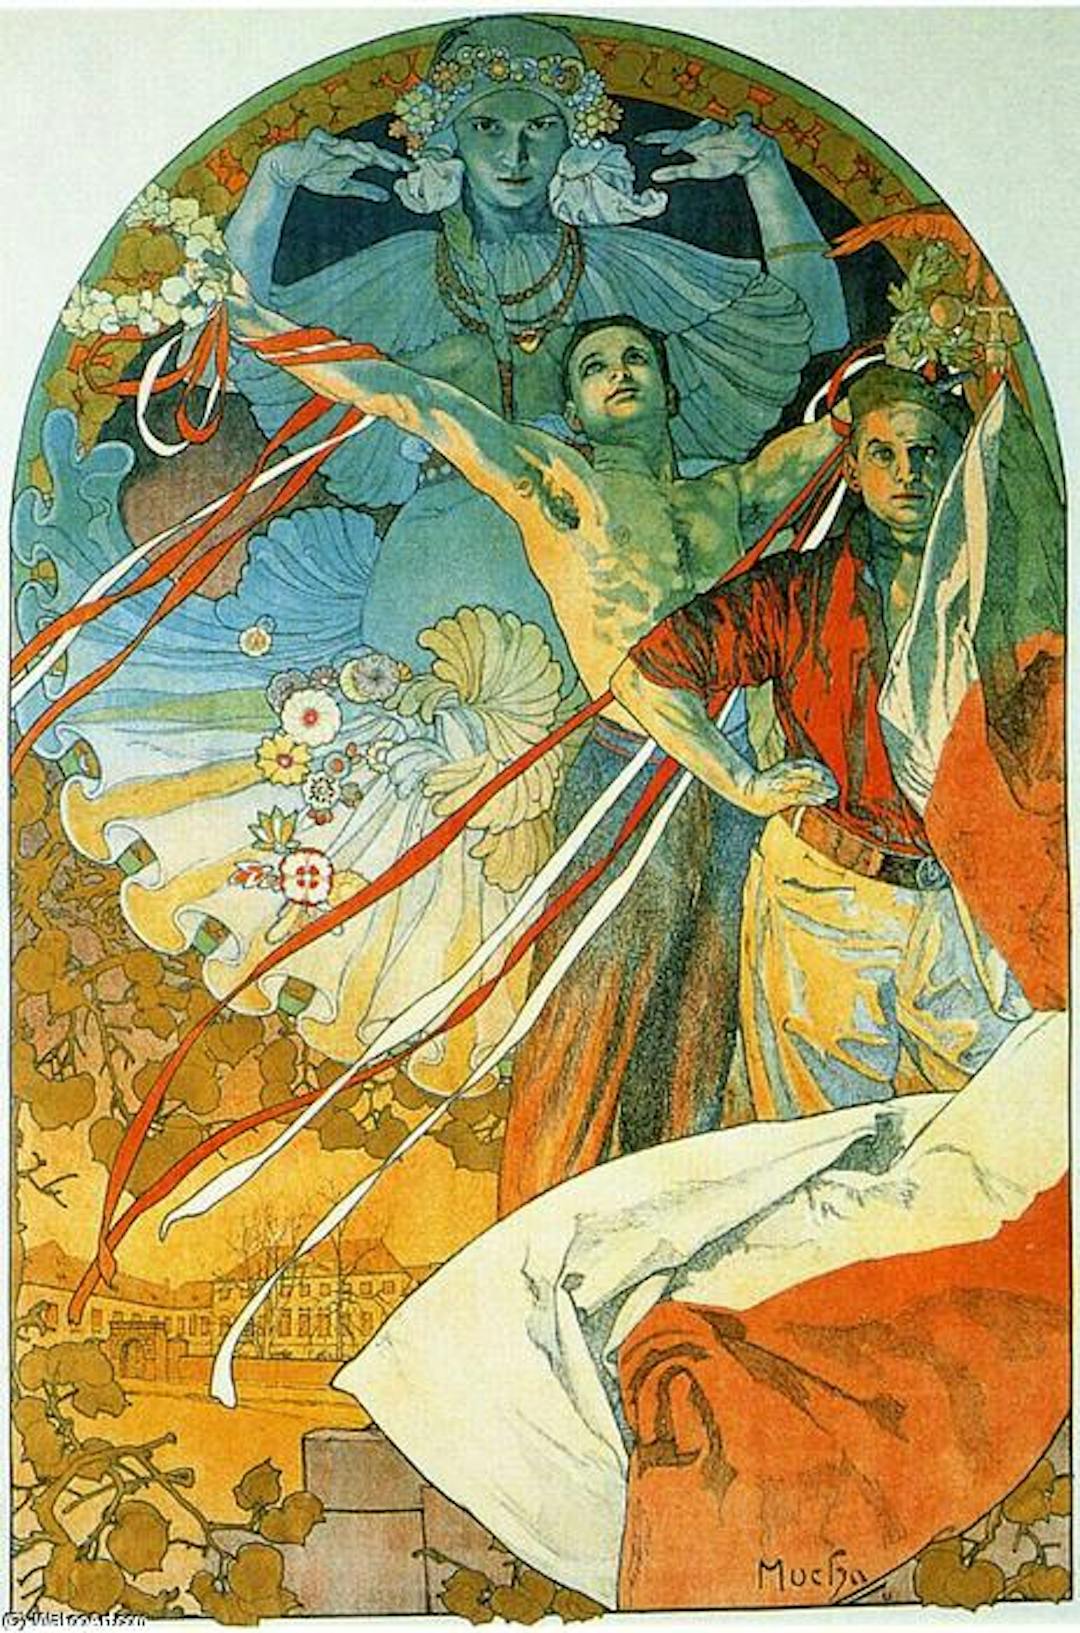 Plakat für das 8. Sokol-Festival von Alfons Mucha, einem der wichtigsten Begründer der Jugendstilbewegung. Verfügbar unter https://wikioo.org/.